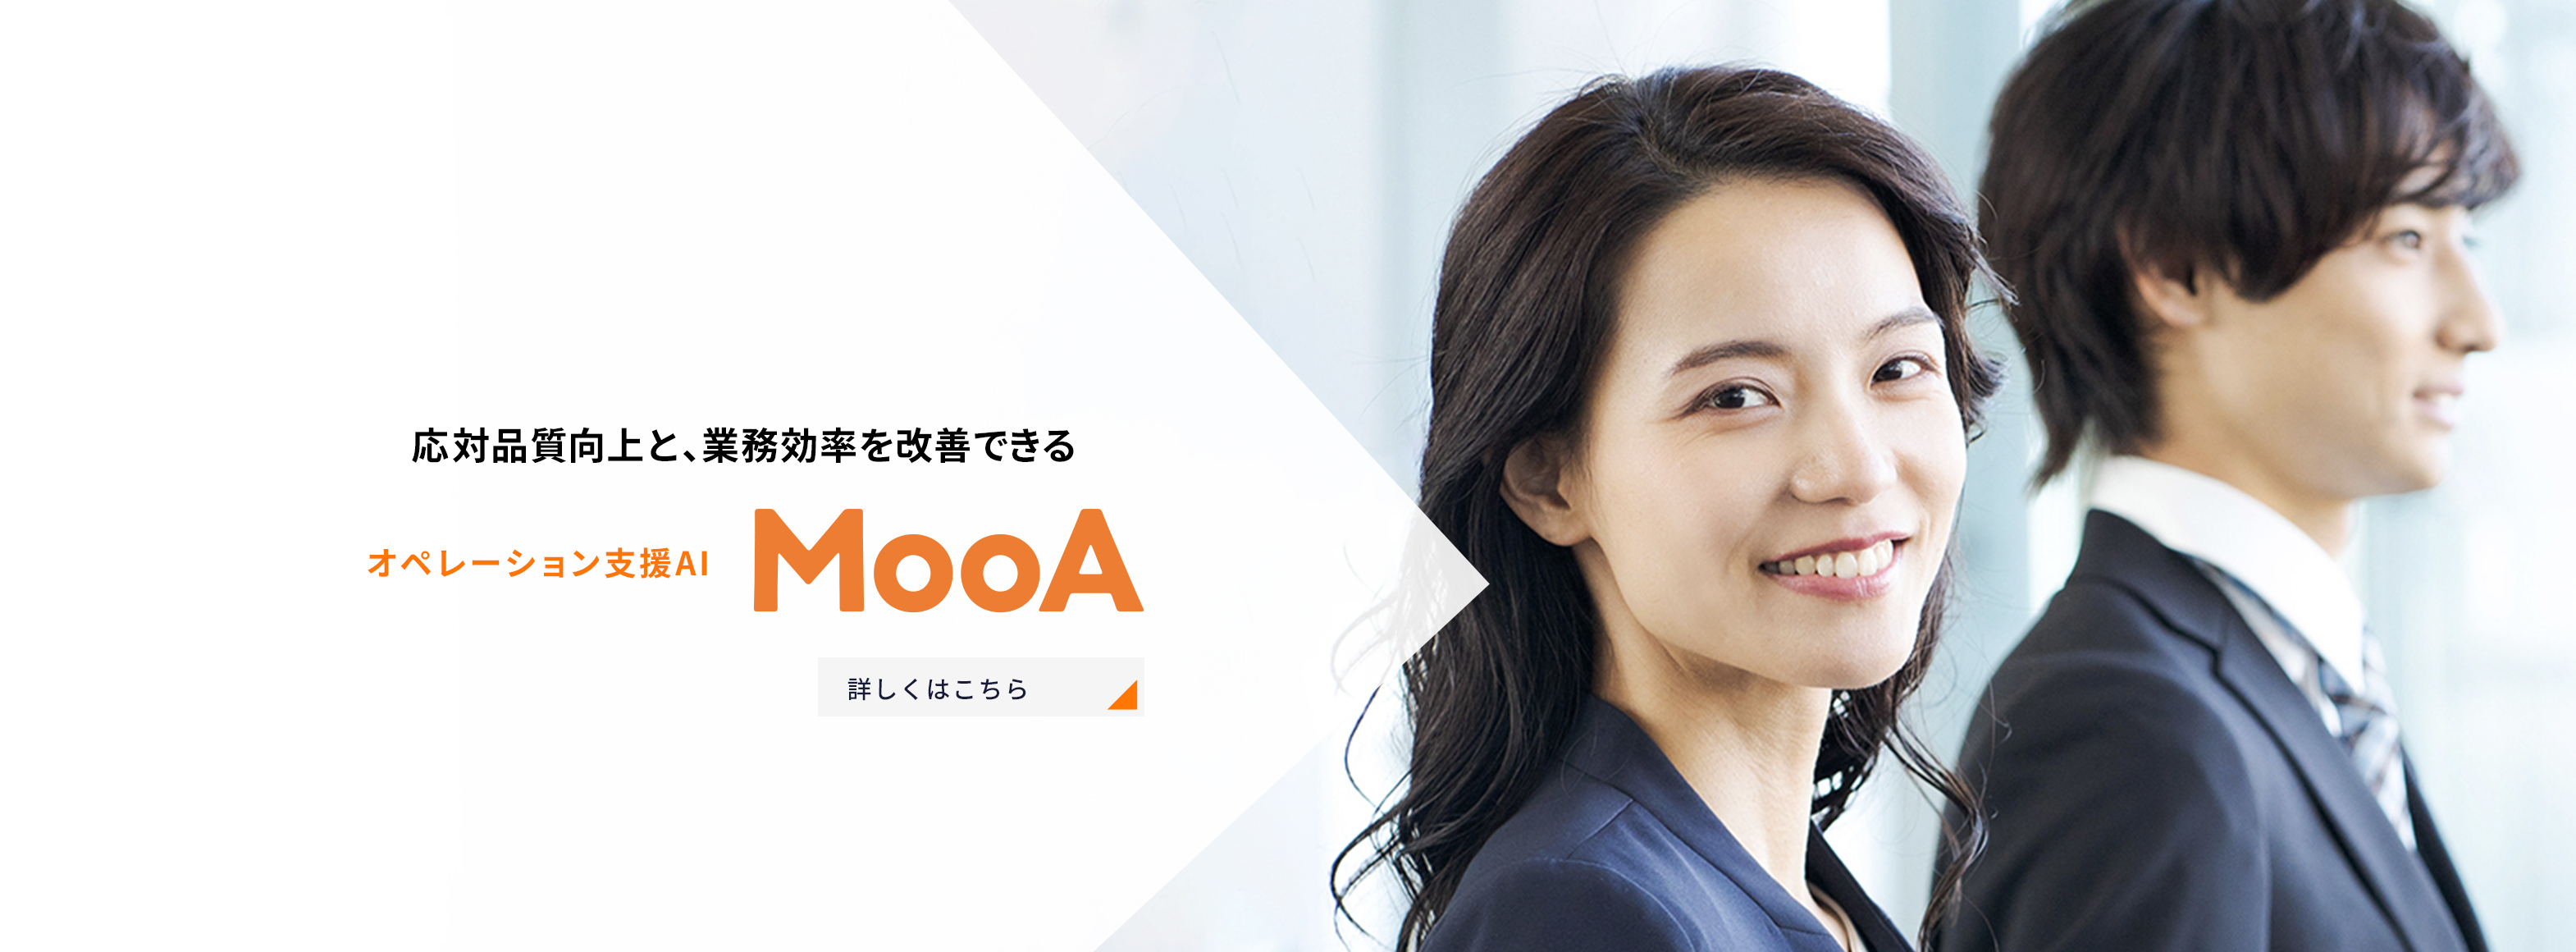 応対品質向上と,業務効率を改善できる オペレーション支援AI MooA